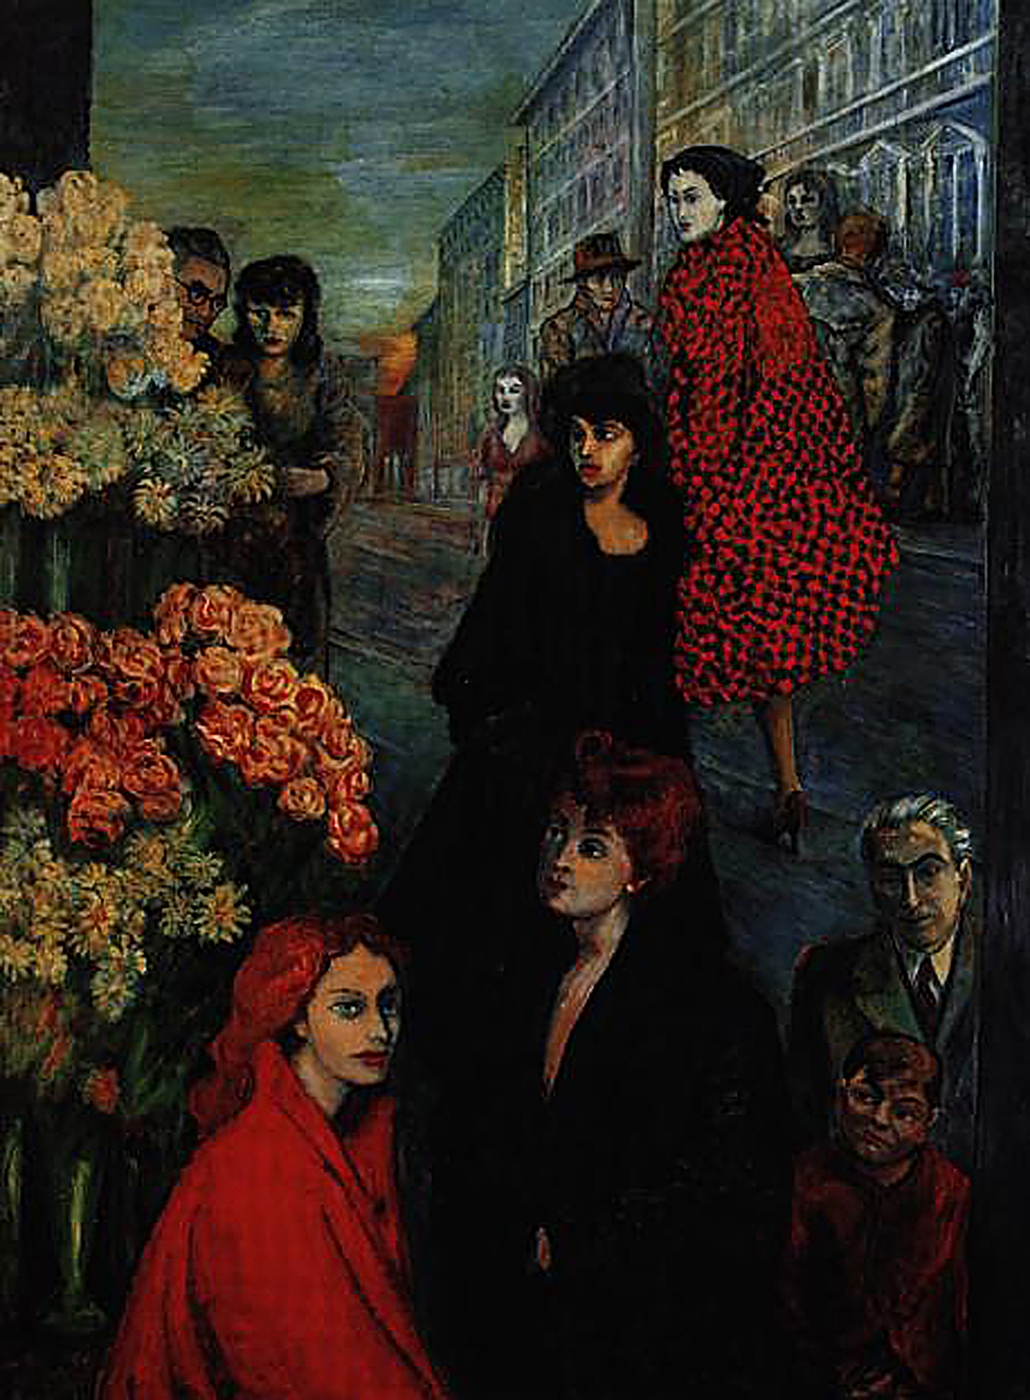 Archive of Aligi Sassu, Via Manzoni 1952
oil on canvas
200 × 149,5 cm